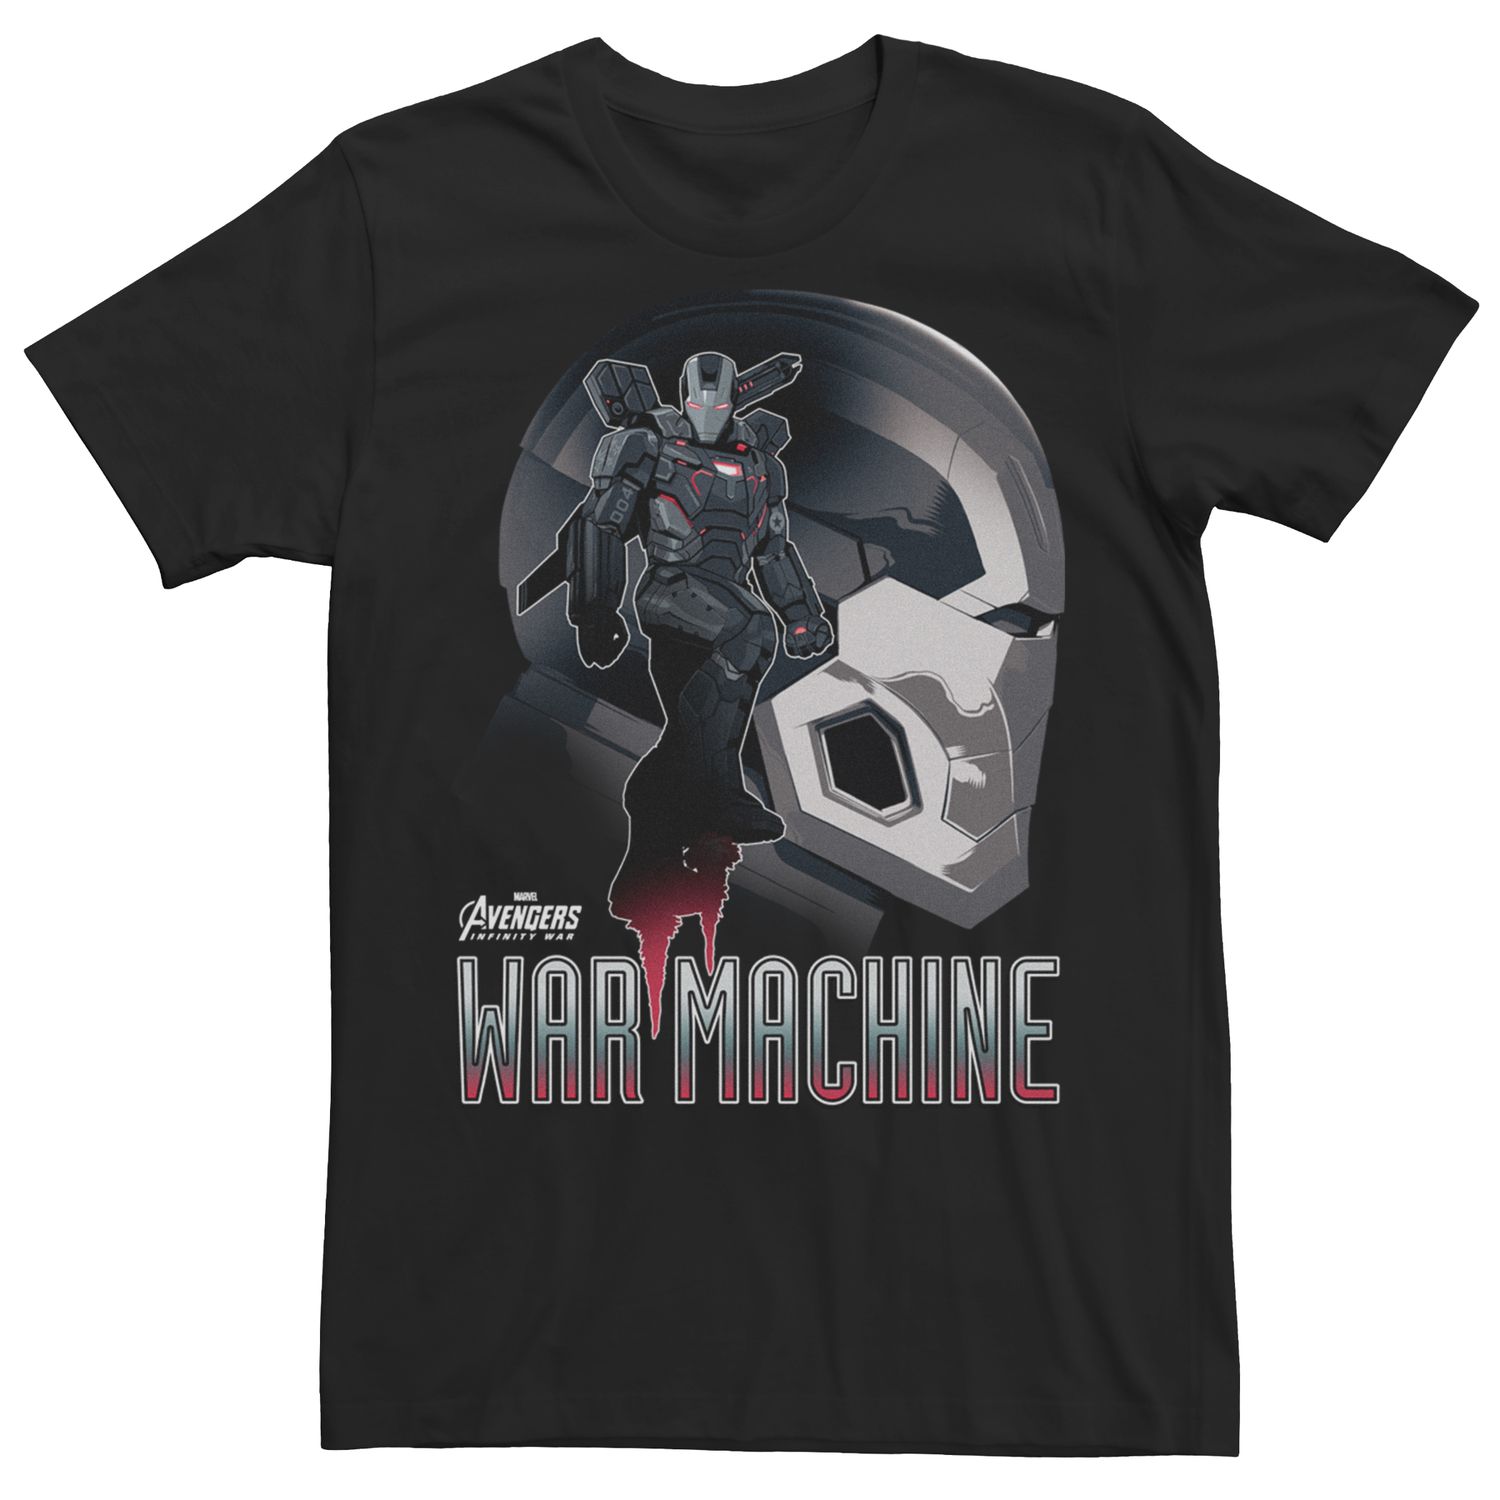 Мужская футболка с рисунком и силуэтом Marvel Avengers Infinity War Machine Licensed Character цена и фото